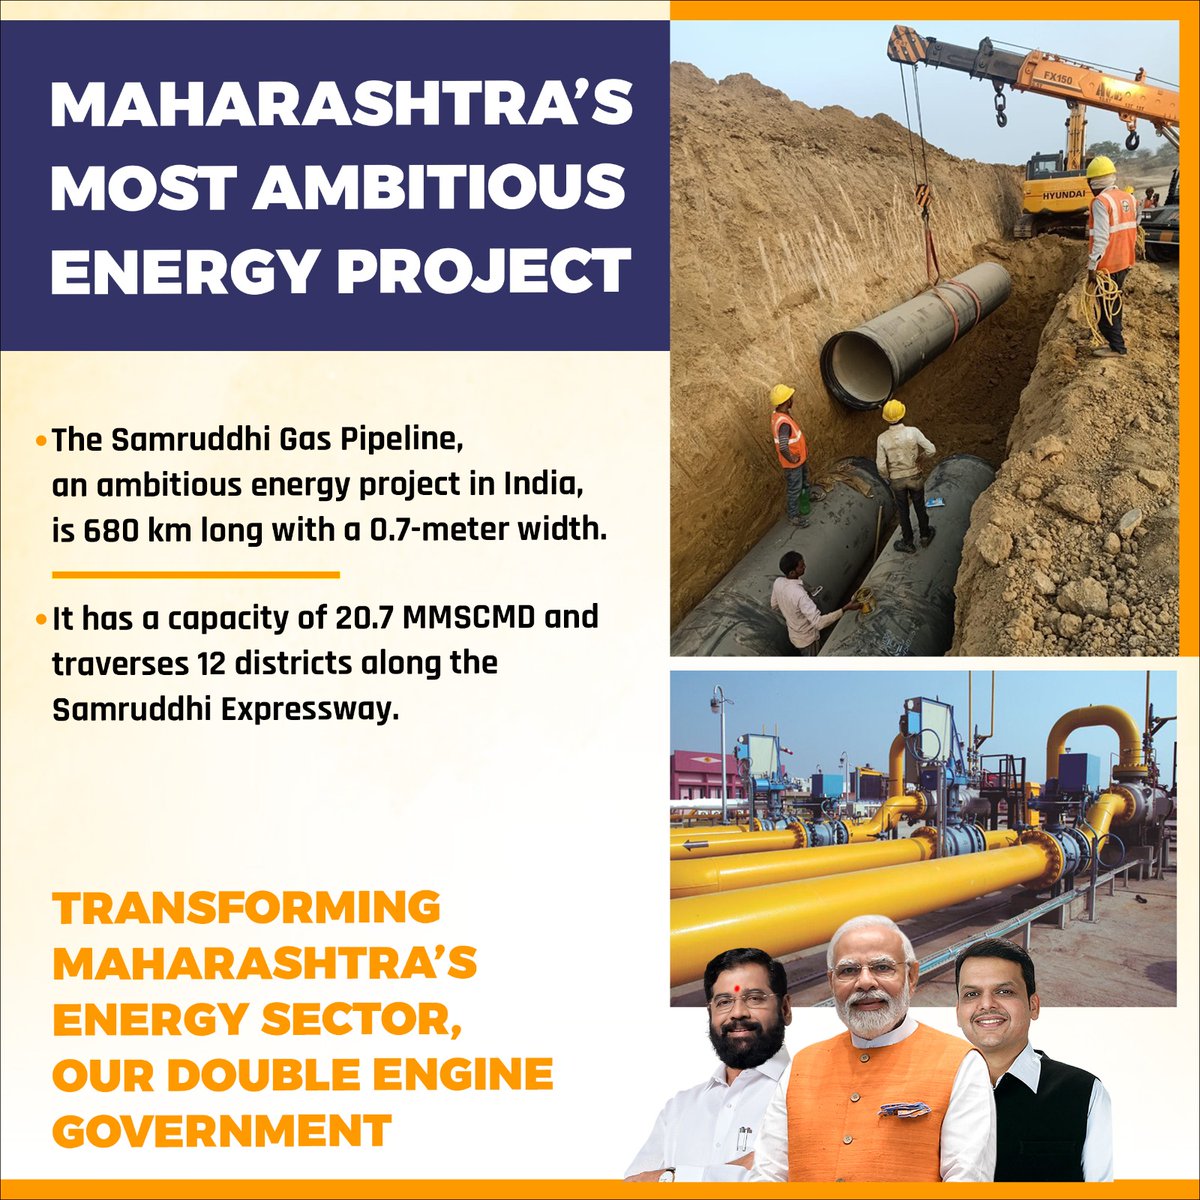 समृद्धि गैस पाइपलाइन सीएम एकनाथ शिंदे के नेतृत्व में महाराष्ट्र के विकास का प्रमाण है। 12 जिलों से होकर गुज़रने वाली और हमारी ऊर्जा क्षमता को बढ़ाने वाली यह परियोजना वास्तव में महत्वाकांक्षी है!